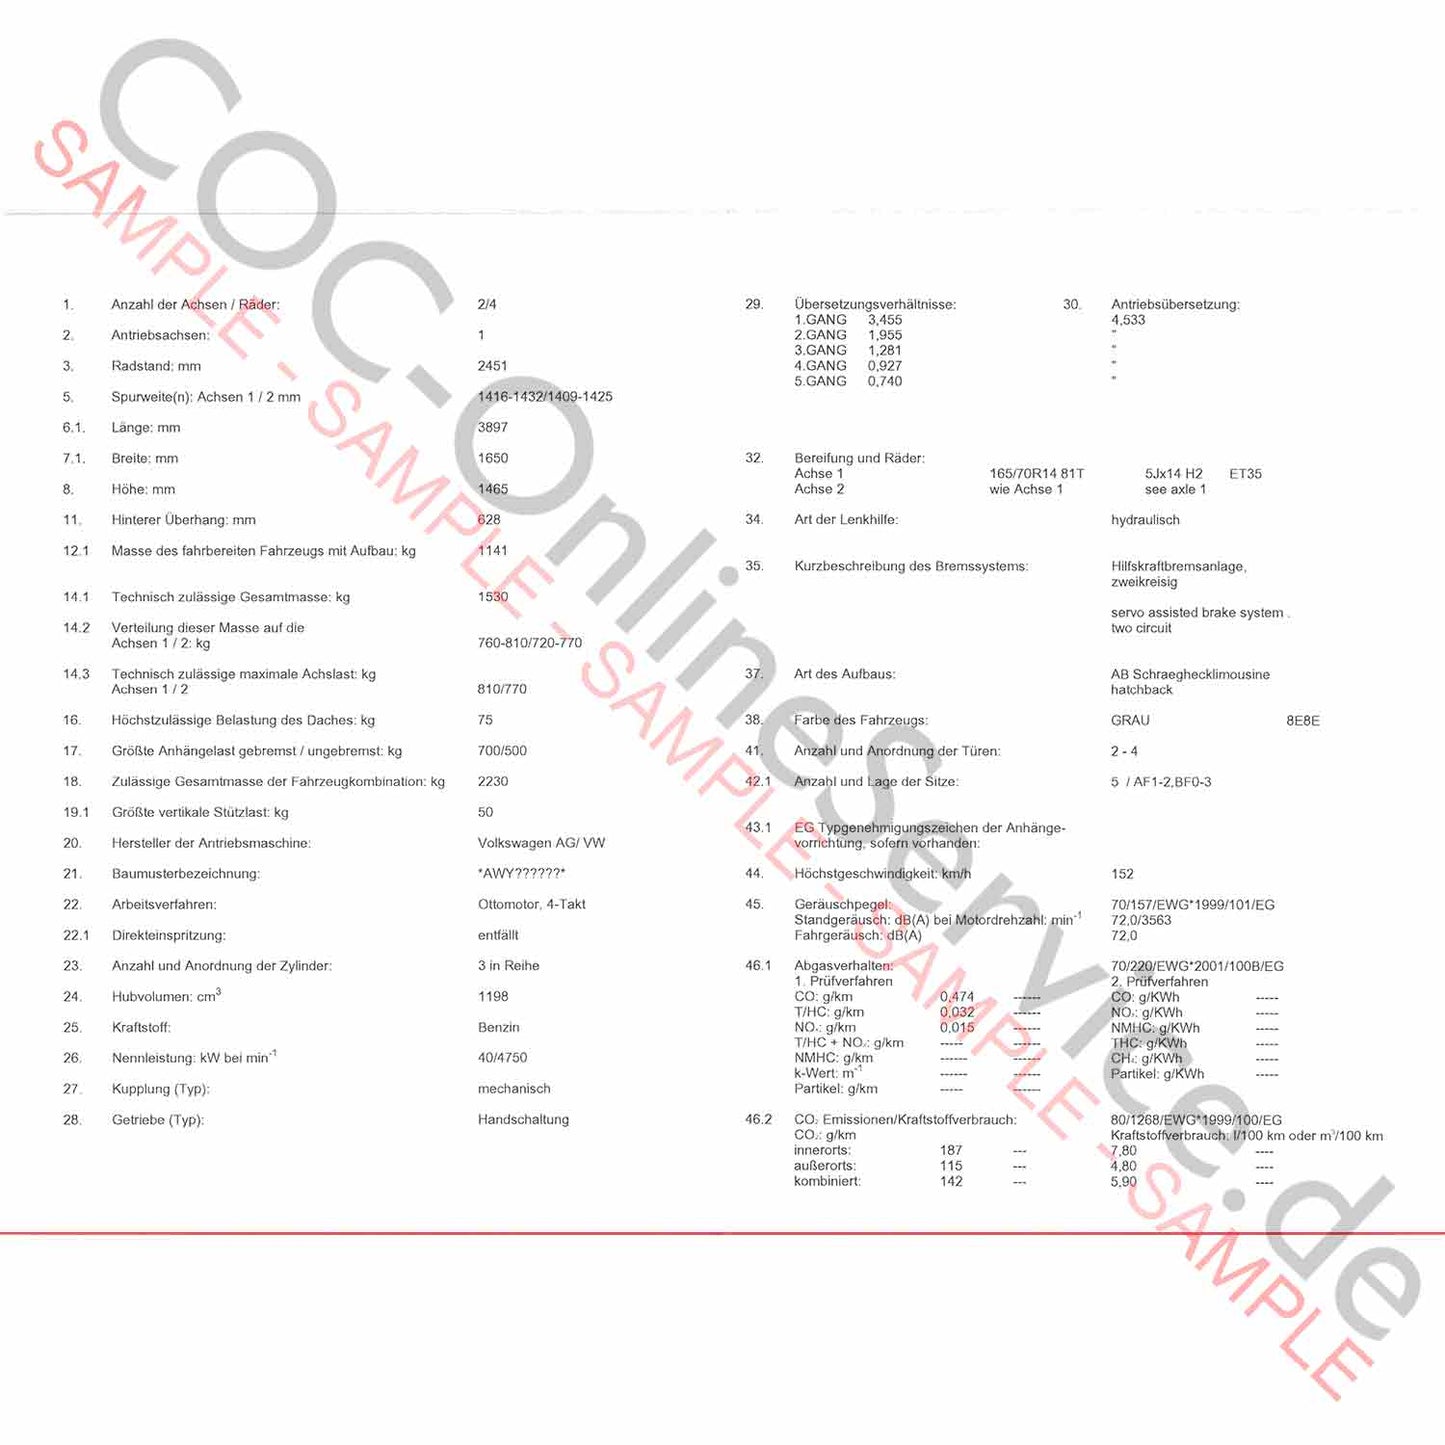 Documento COC para VW Volkswagen (Certificado de Conformidad)